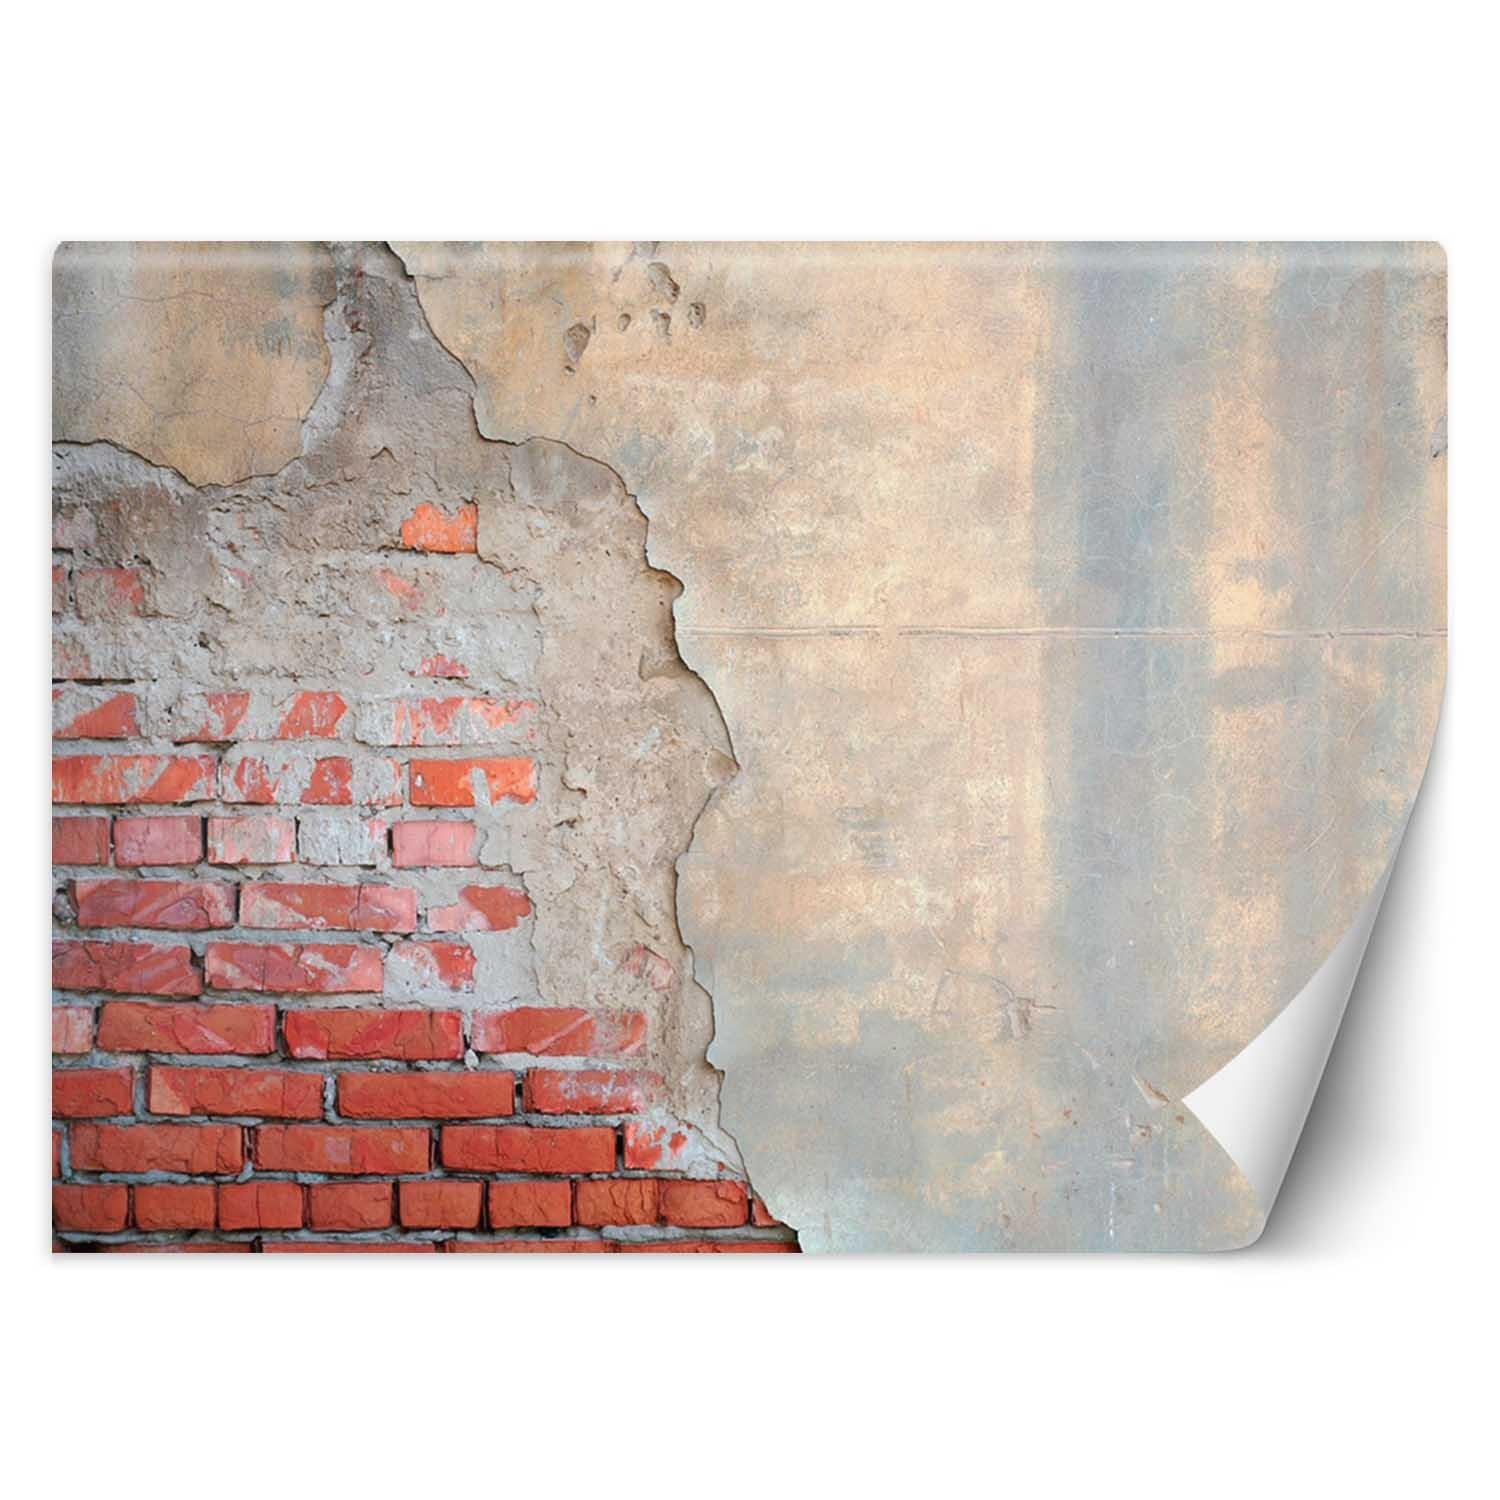 Trend24 – Behang – Bakstenen Muur – Behangpapier – Behang Woonkamer – Fotobehang – 200x140x2 cm – Incl. behanglijm